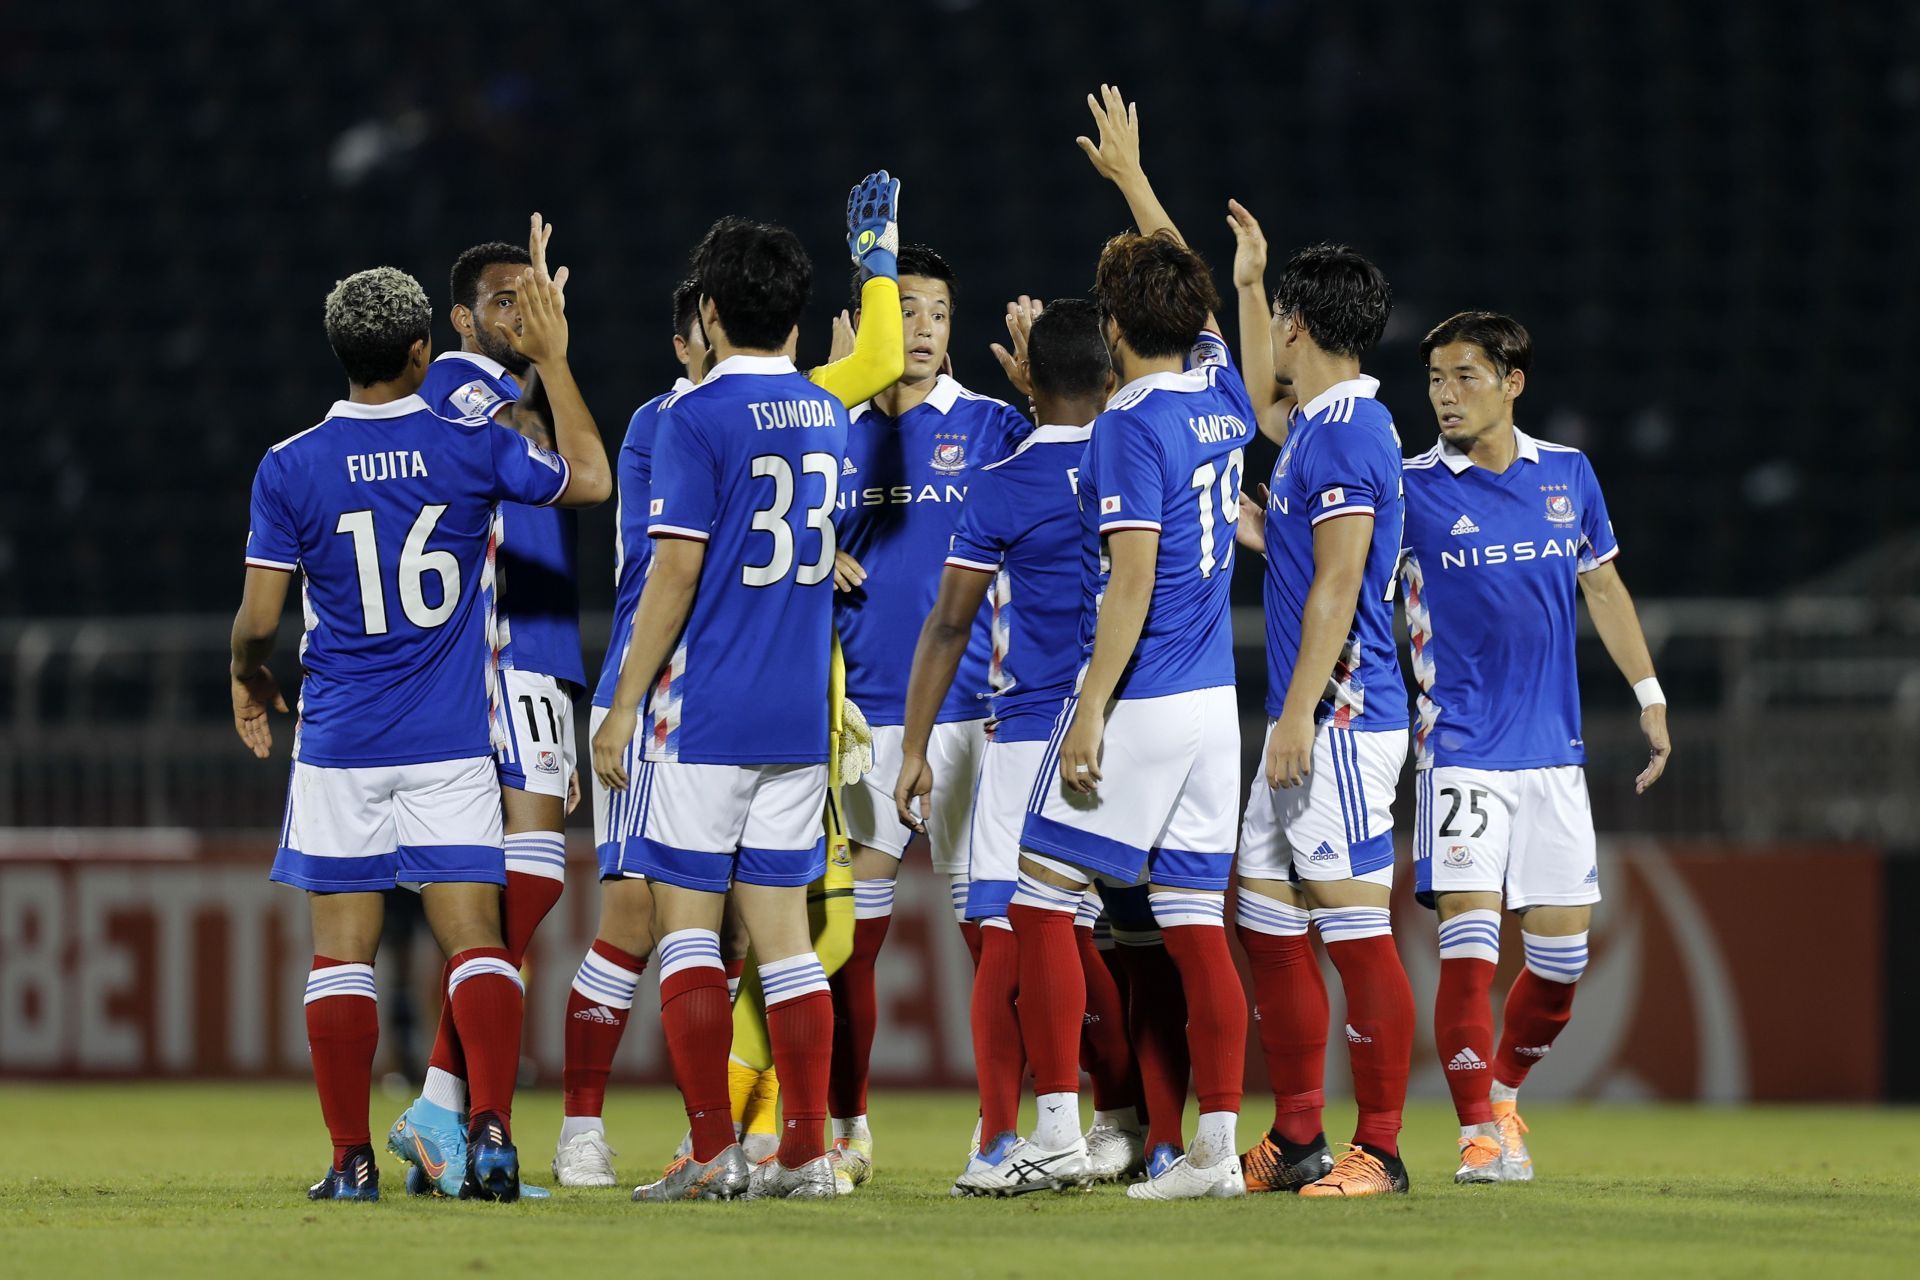 Kashima Antlers take on Yokohama F. Marinos this weekend